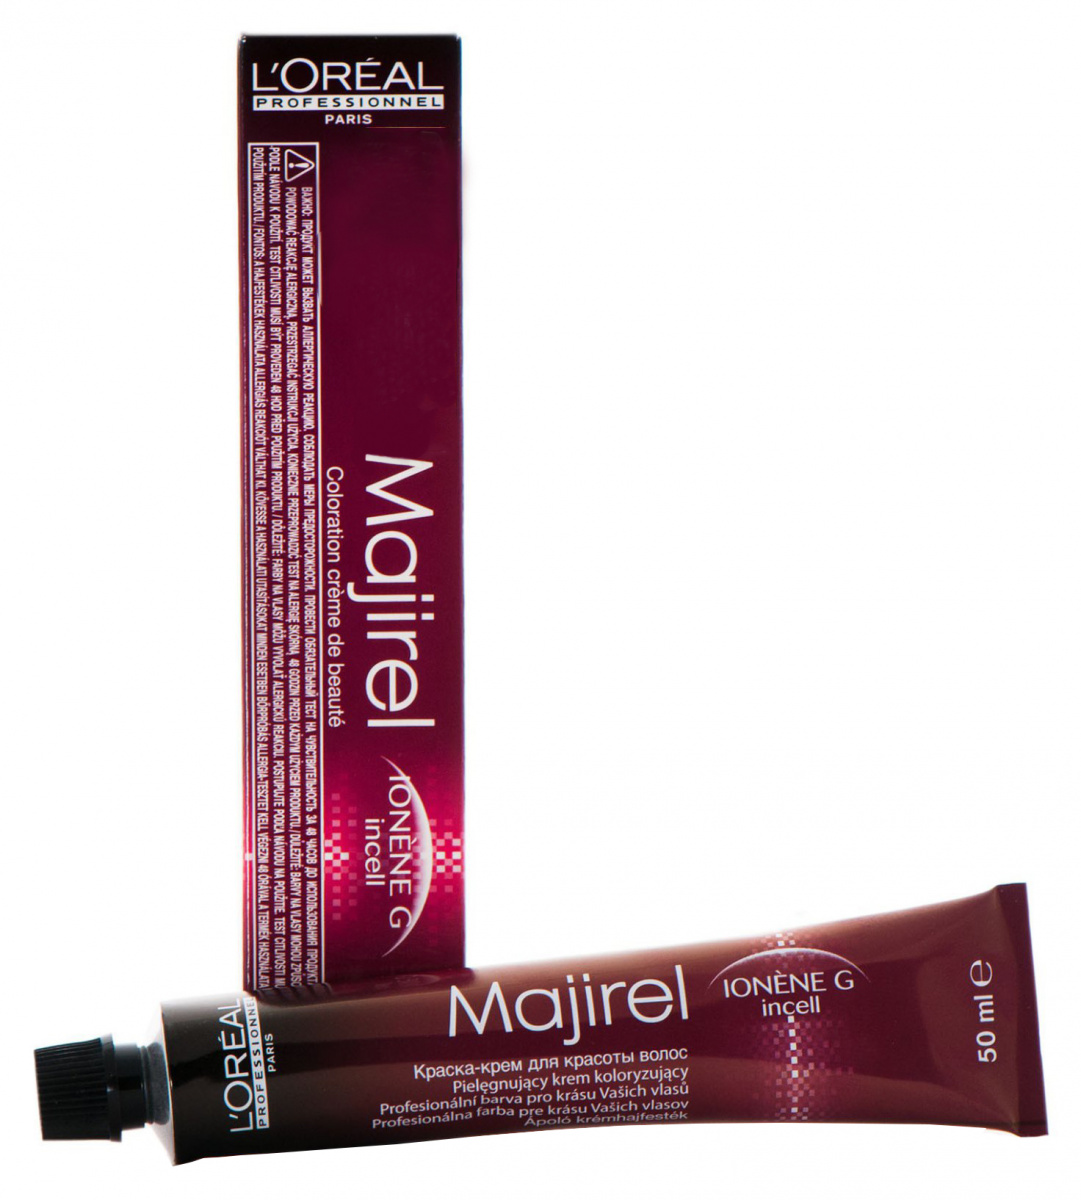 L'Oreal Professionnel Majirel Metals - Стойкая крем-краска для волос .21 перламутровый пепельный 50 мл L'Oreal Professionnel (Франция) купить по цене 1 205 руб.